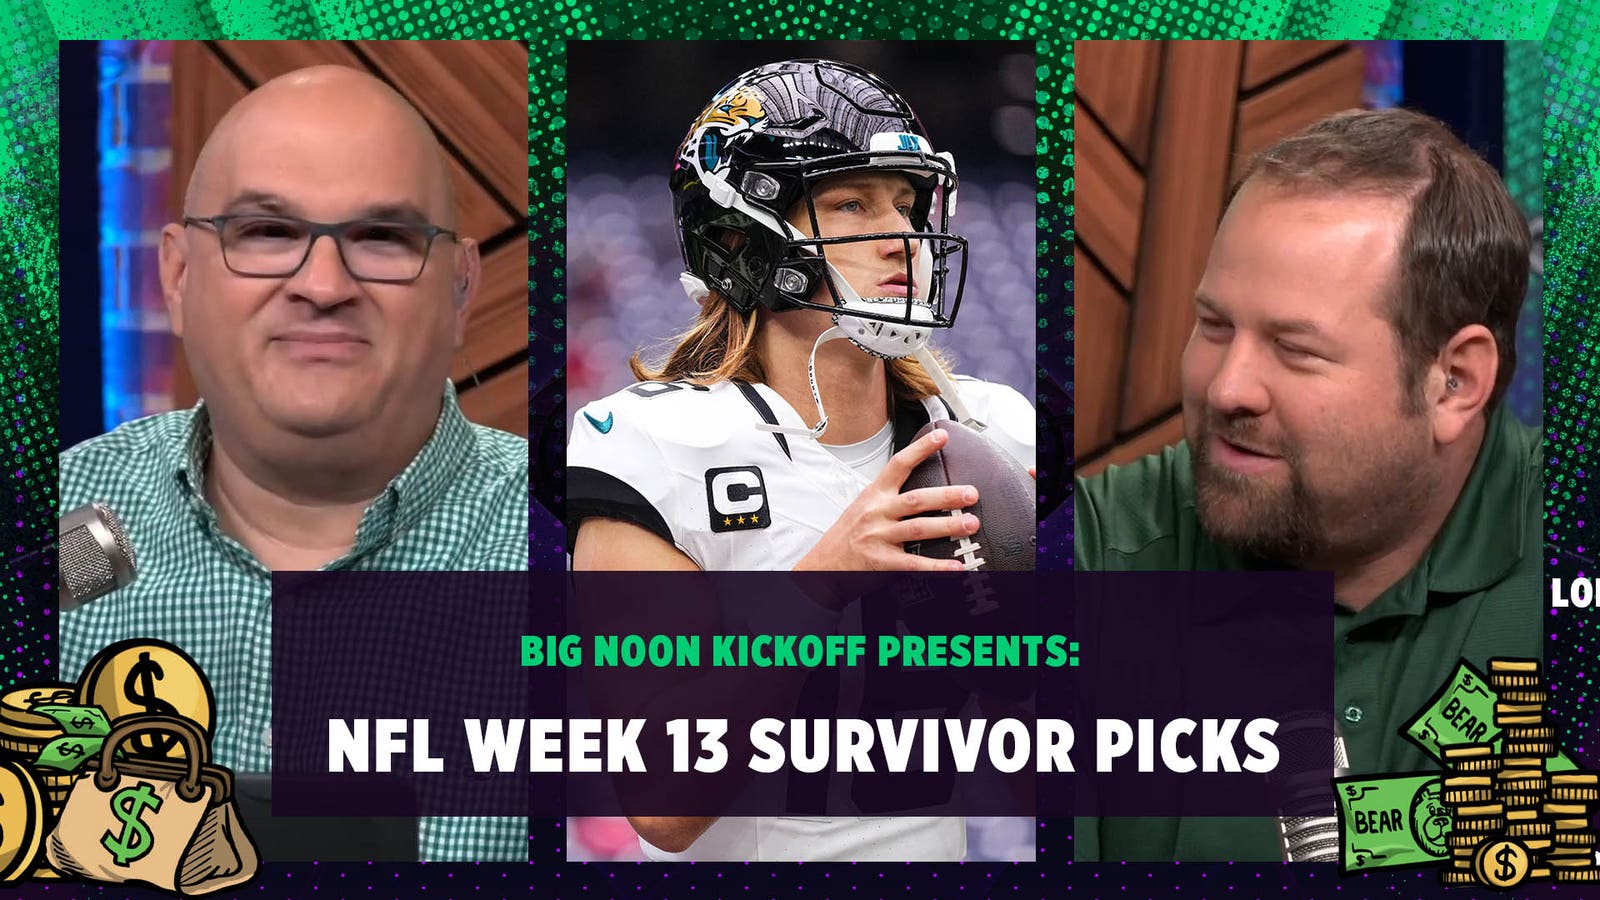 NFL Week 13 Survivor Picks: Jacksonville Jaguars save or play? 